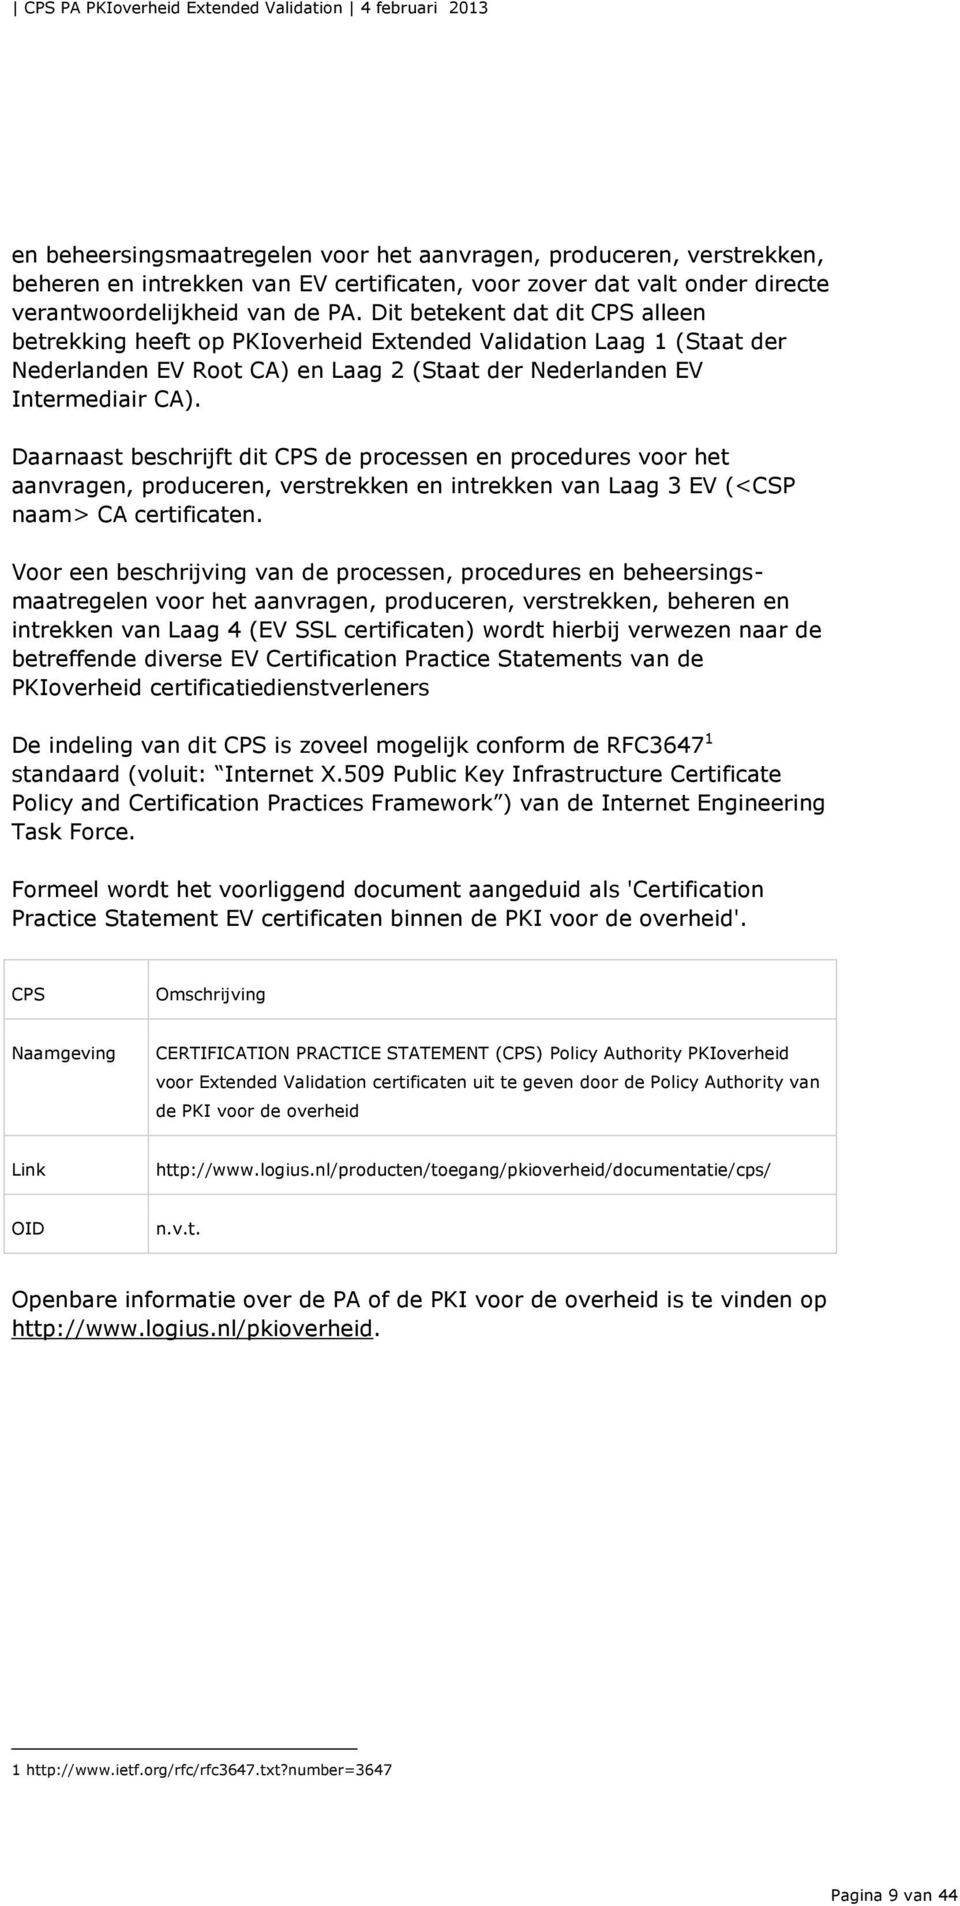 Daarnaast beschrijft dit CPS de processen en procedures voor het aanvragen, produceren, verstrekken en intrekken van Laag 3 EV (<CSP naam> CA certificaten.